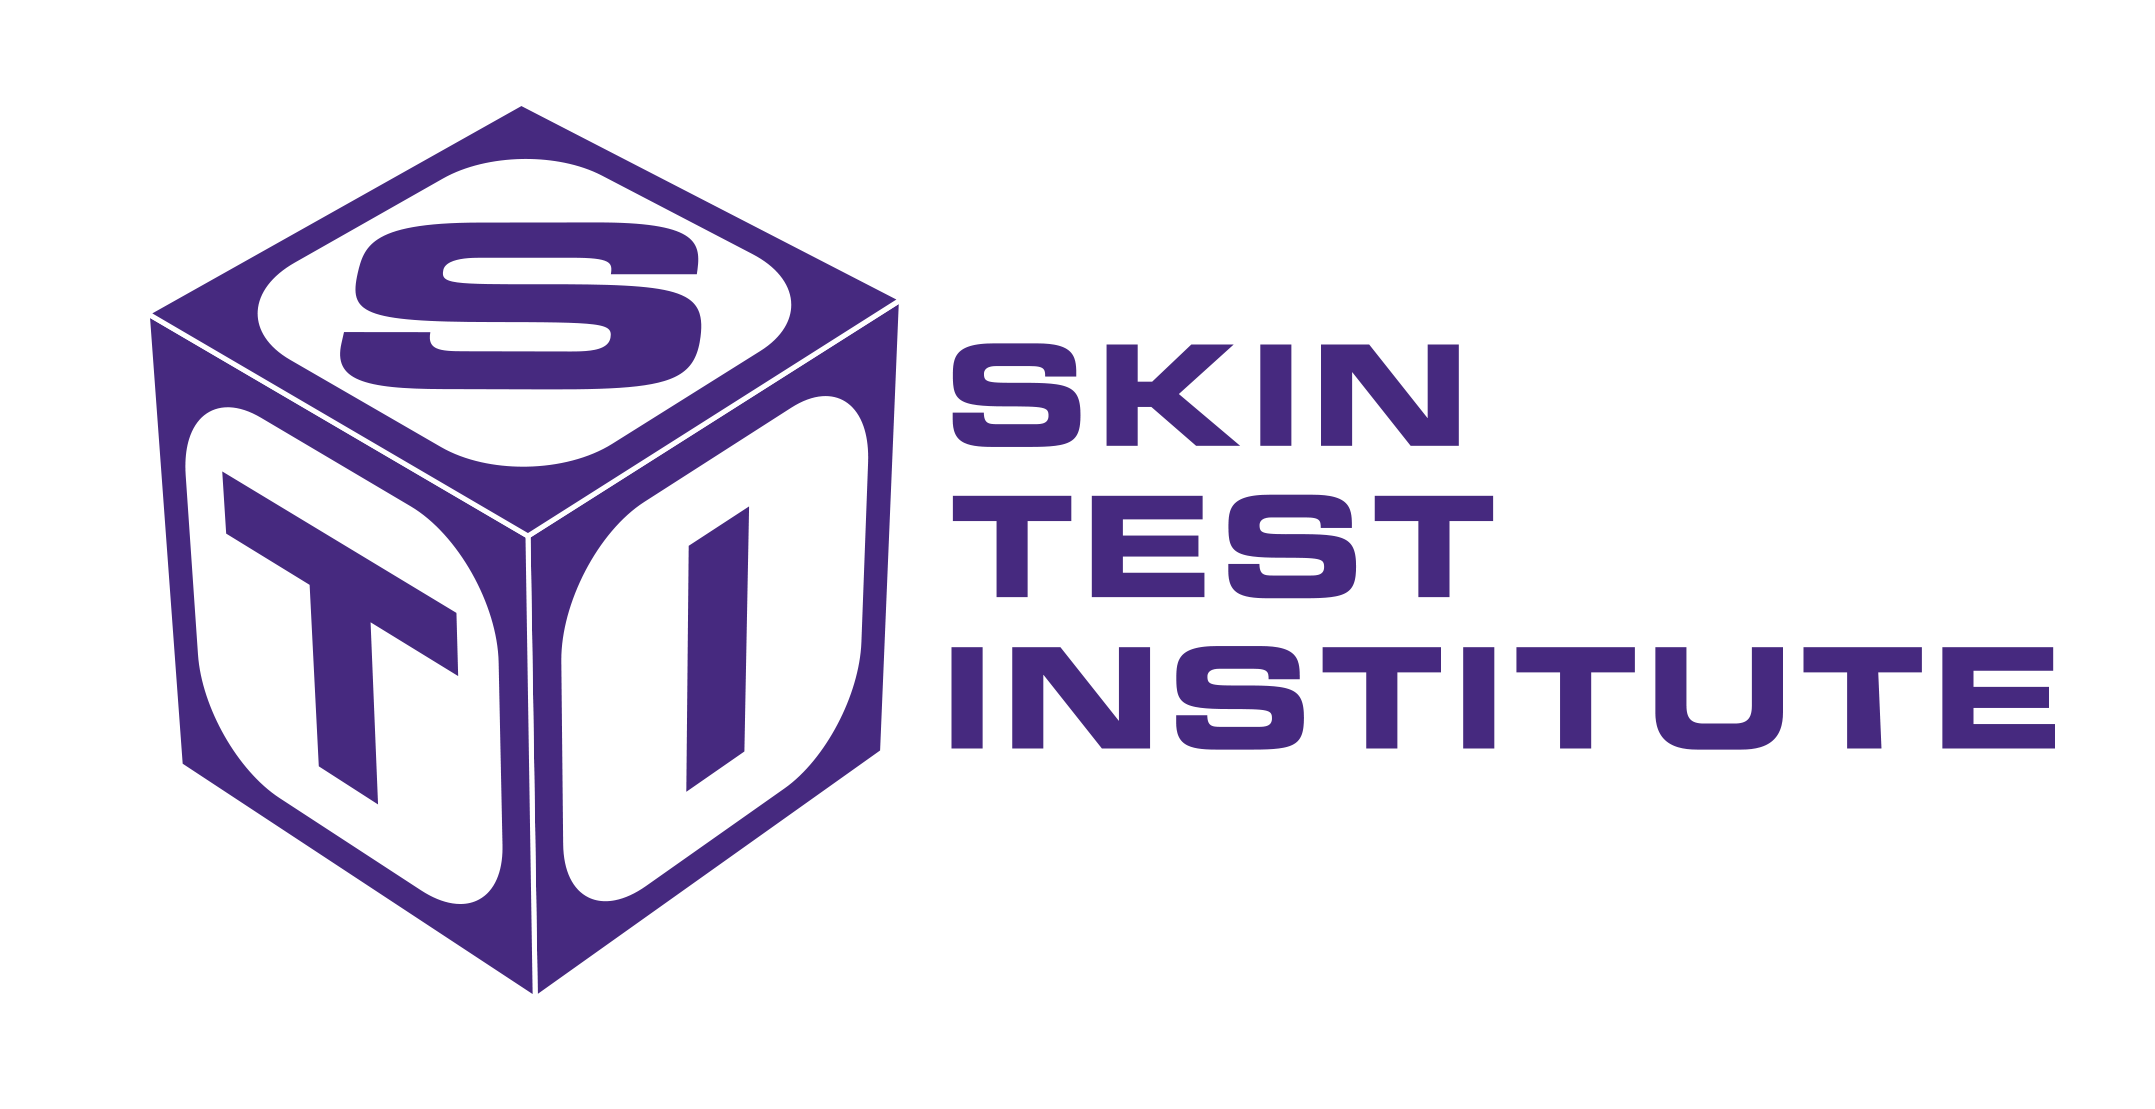 Skin test institute